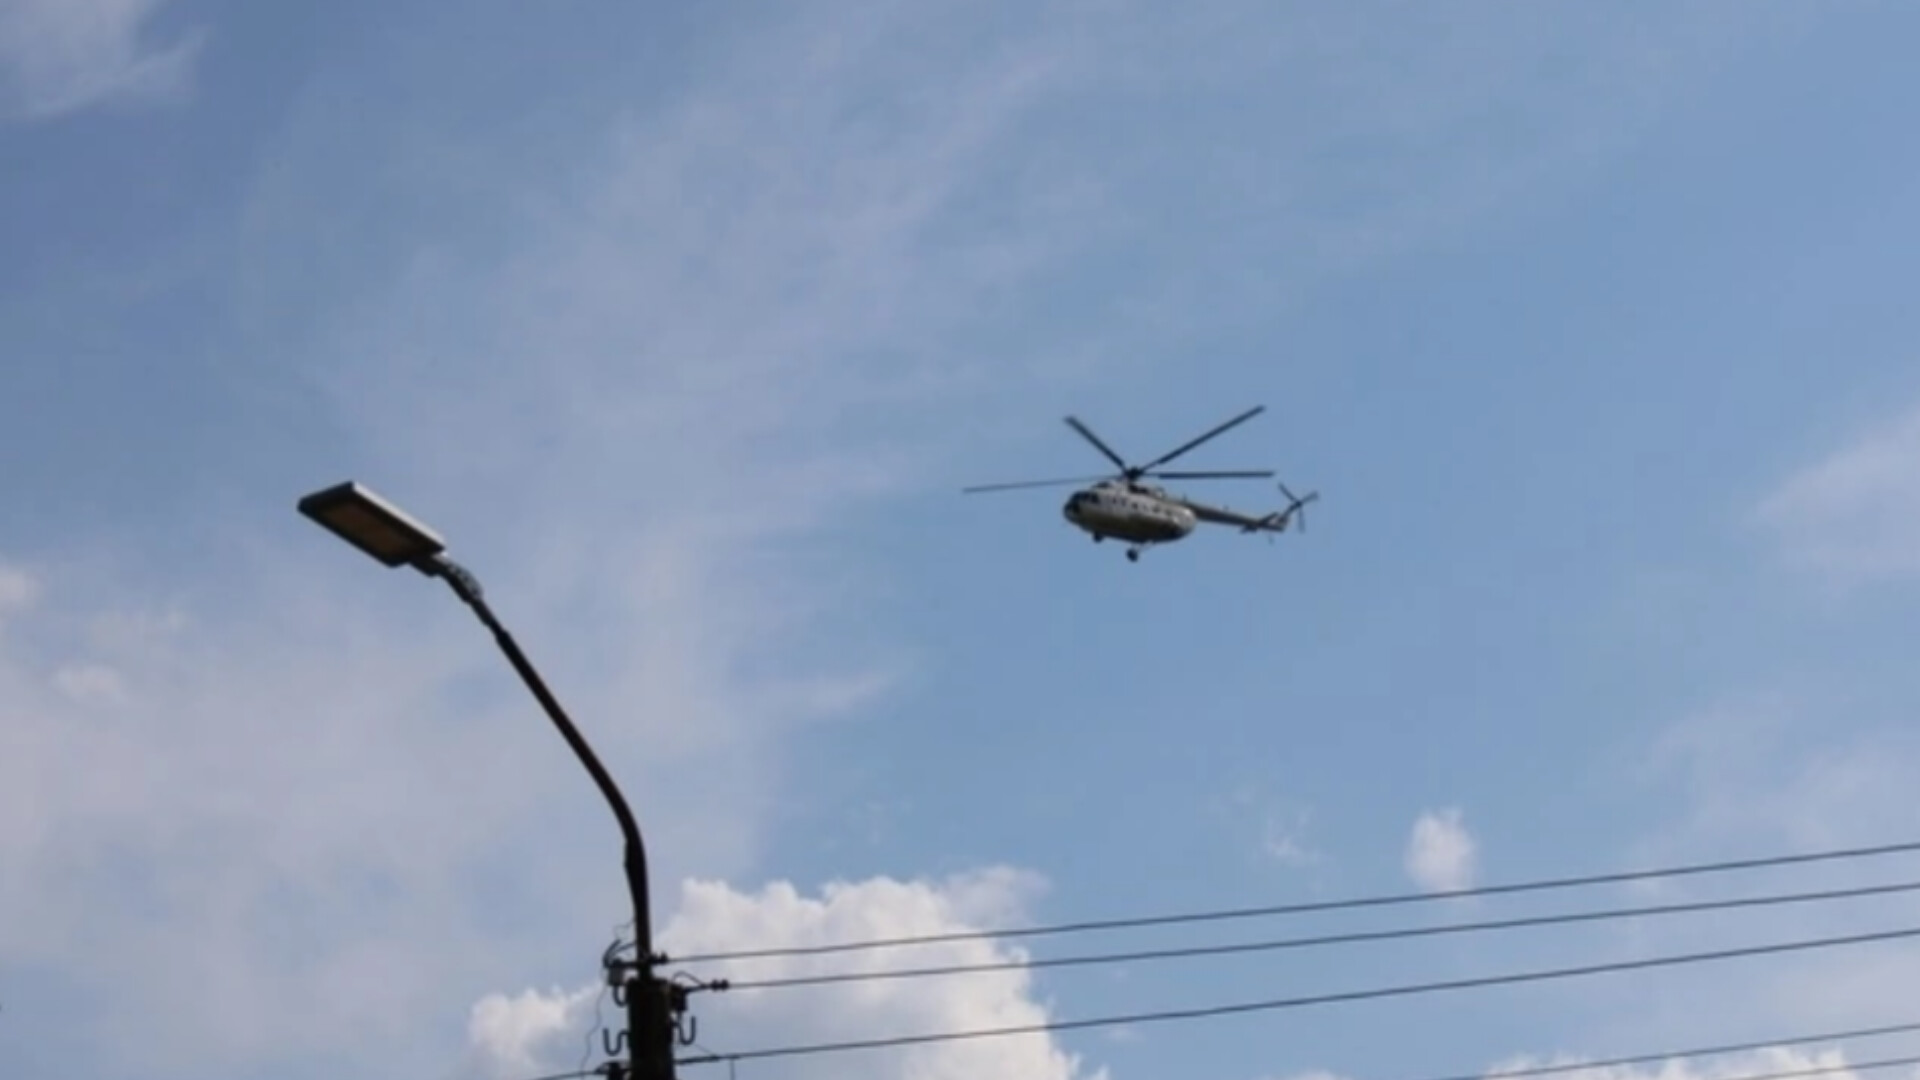 Транспортная прокуратура расследует экстренное возвращение вертолета на взлетную площадку в Ухте